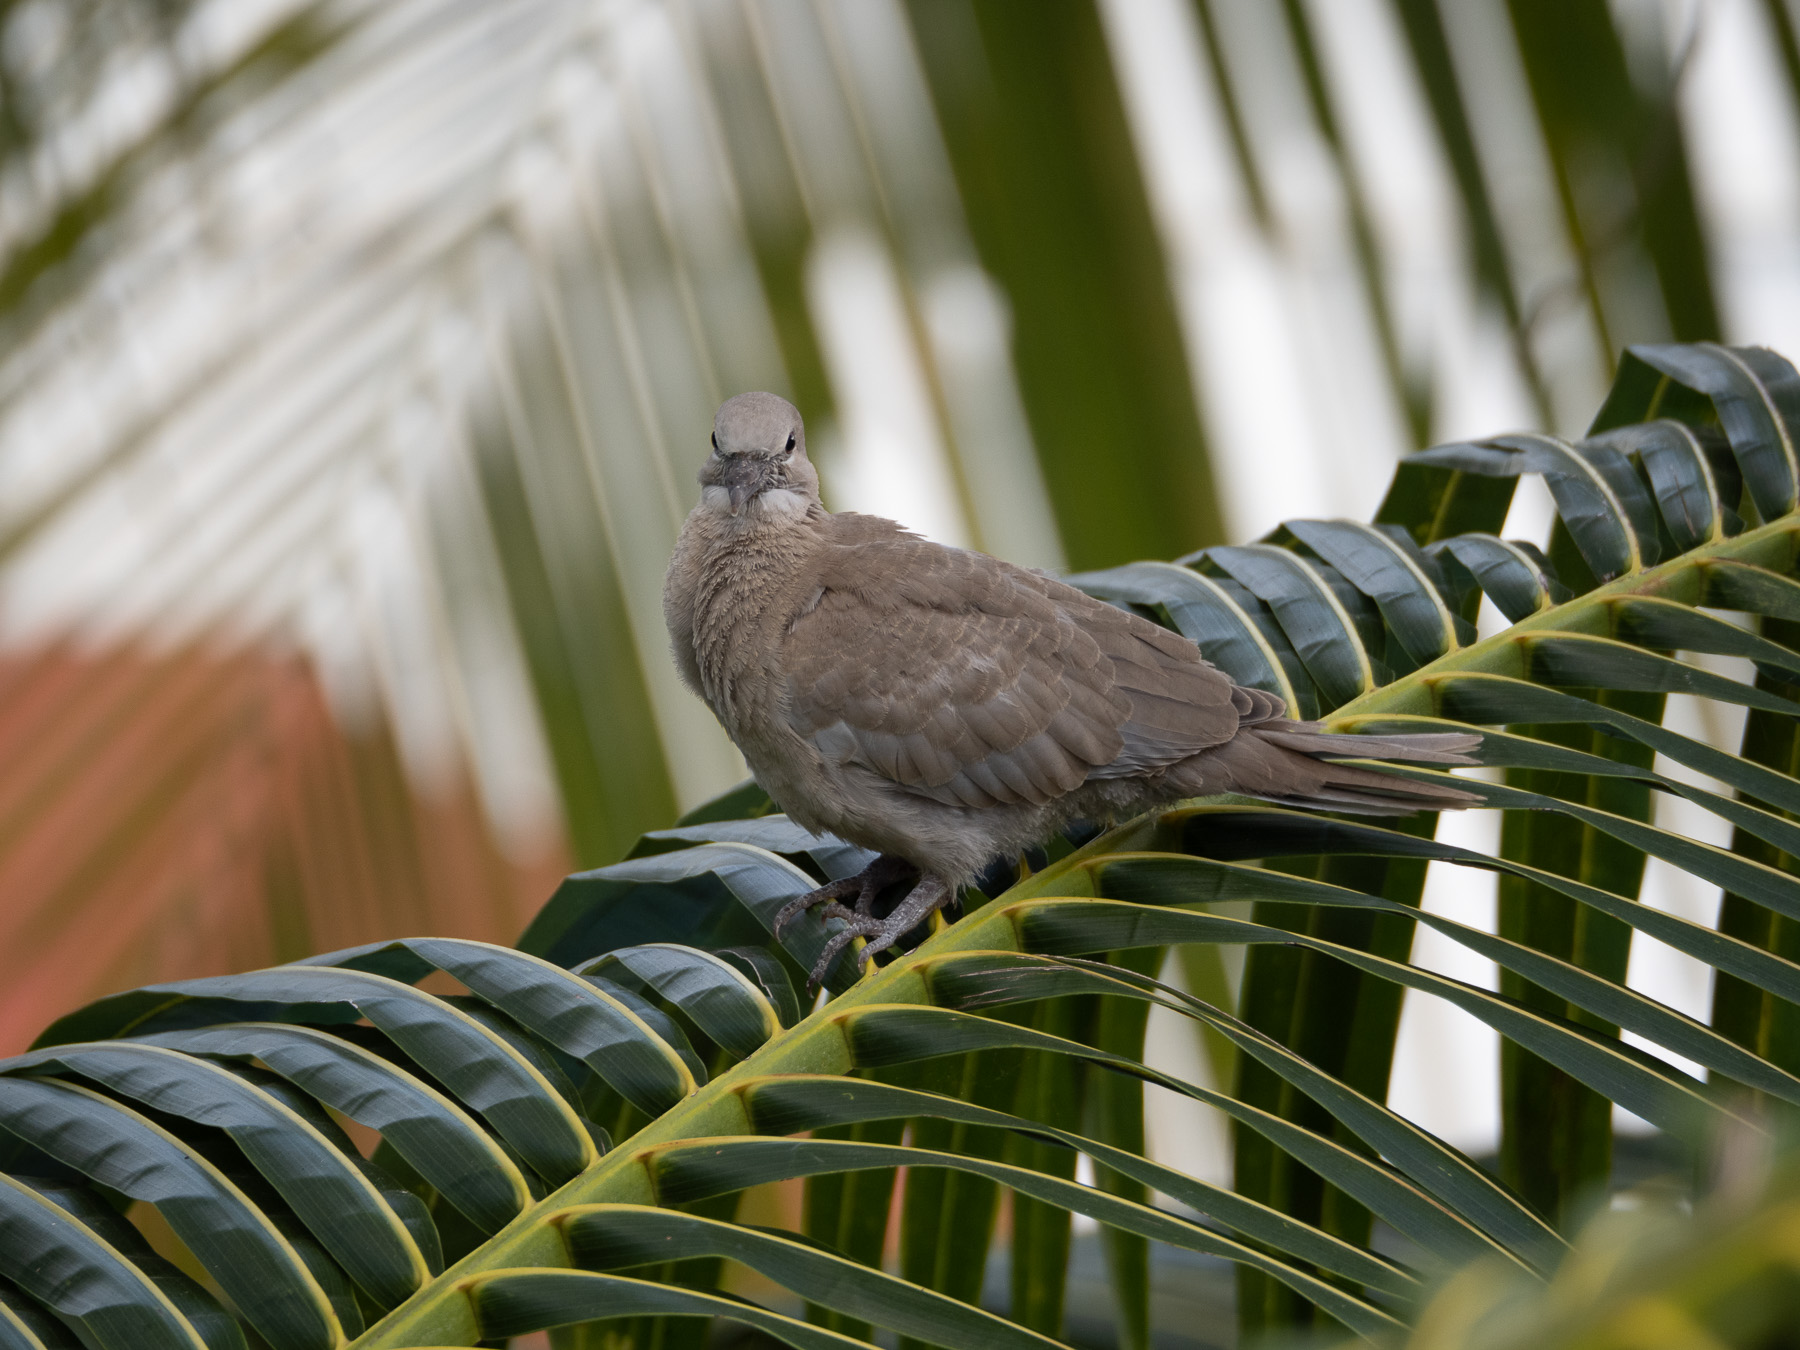 Горлицы и их гнездо, сооружённое между ветвей пальмы.
Канкун, Юкатан. Март2021 г. Автор фото: Сутормина Марина